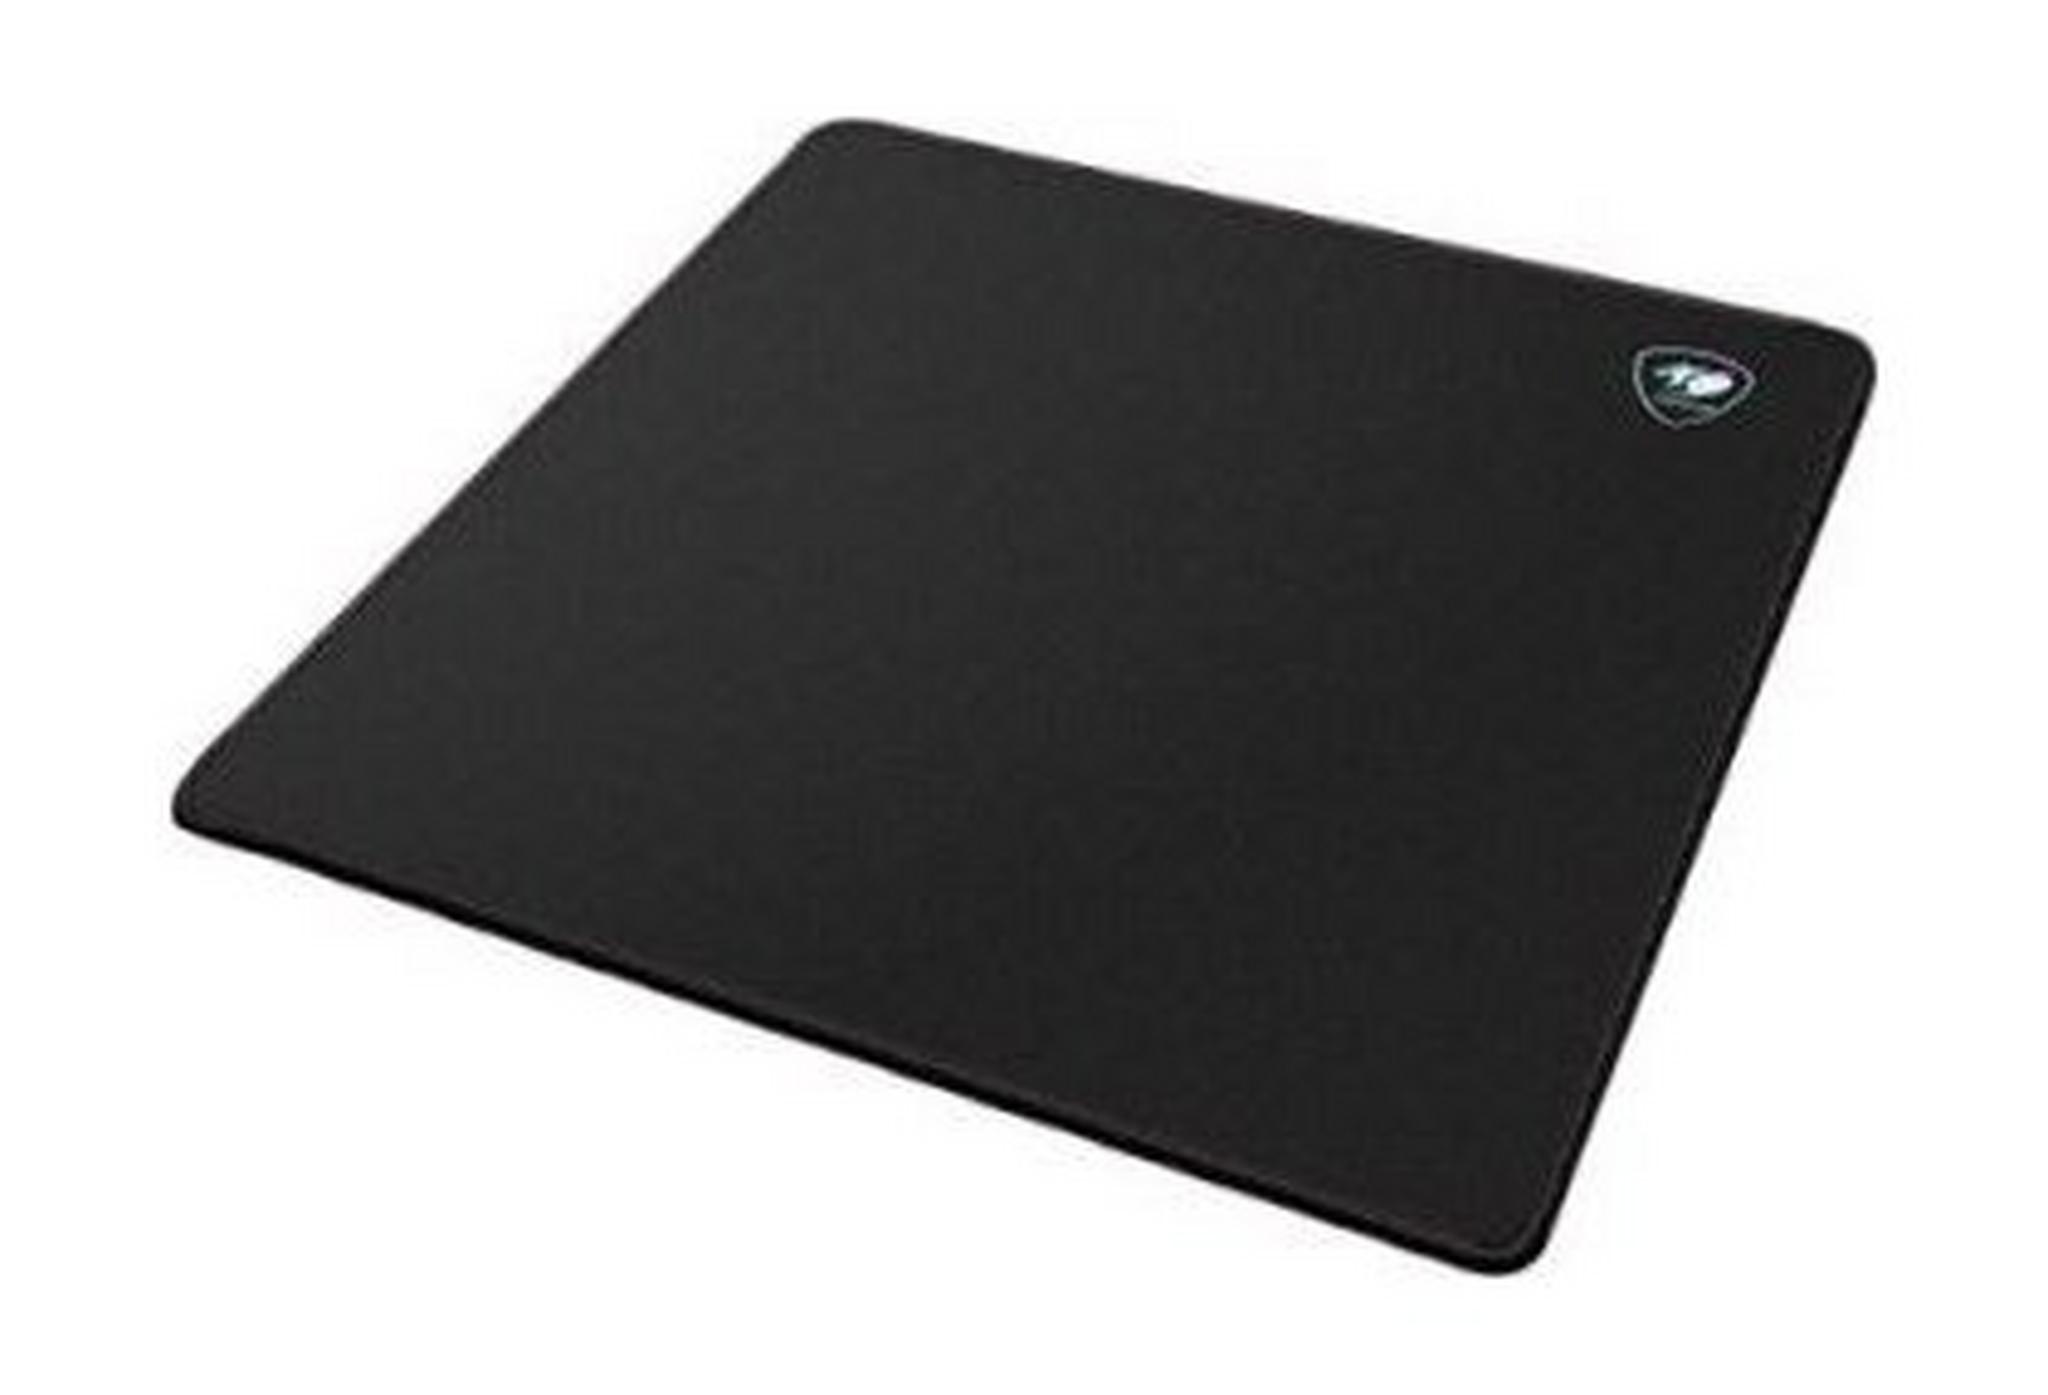 Cougar Speed EX Gaming Mouse Pad (Medium) - Black